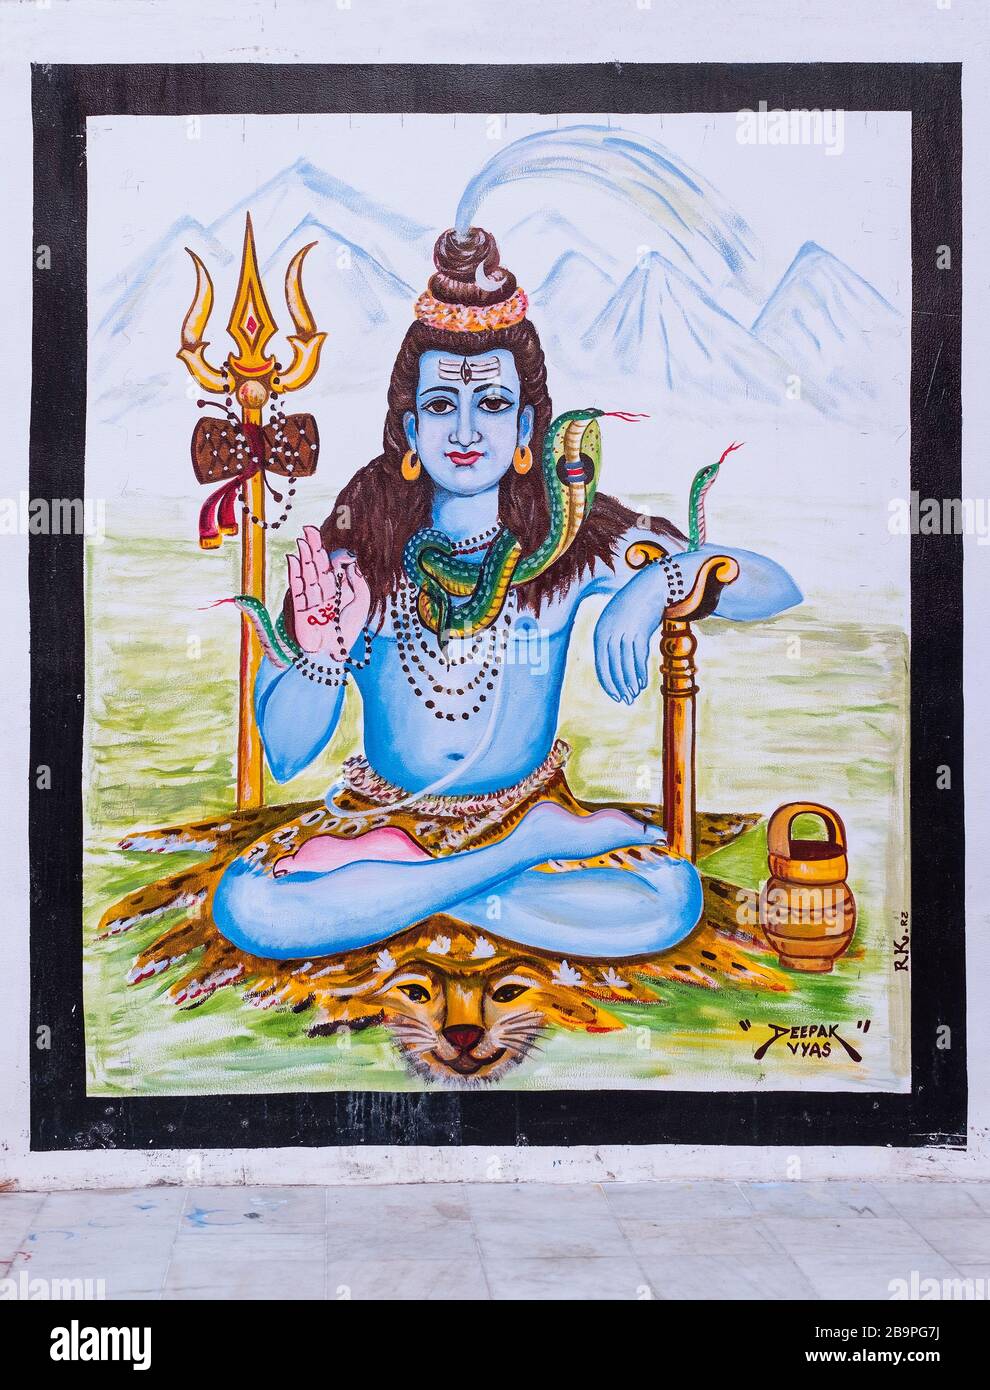 Shiva mural Jodhpur Rajasthan India Stock Photo